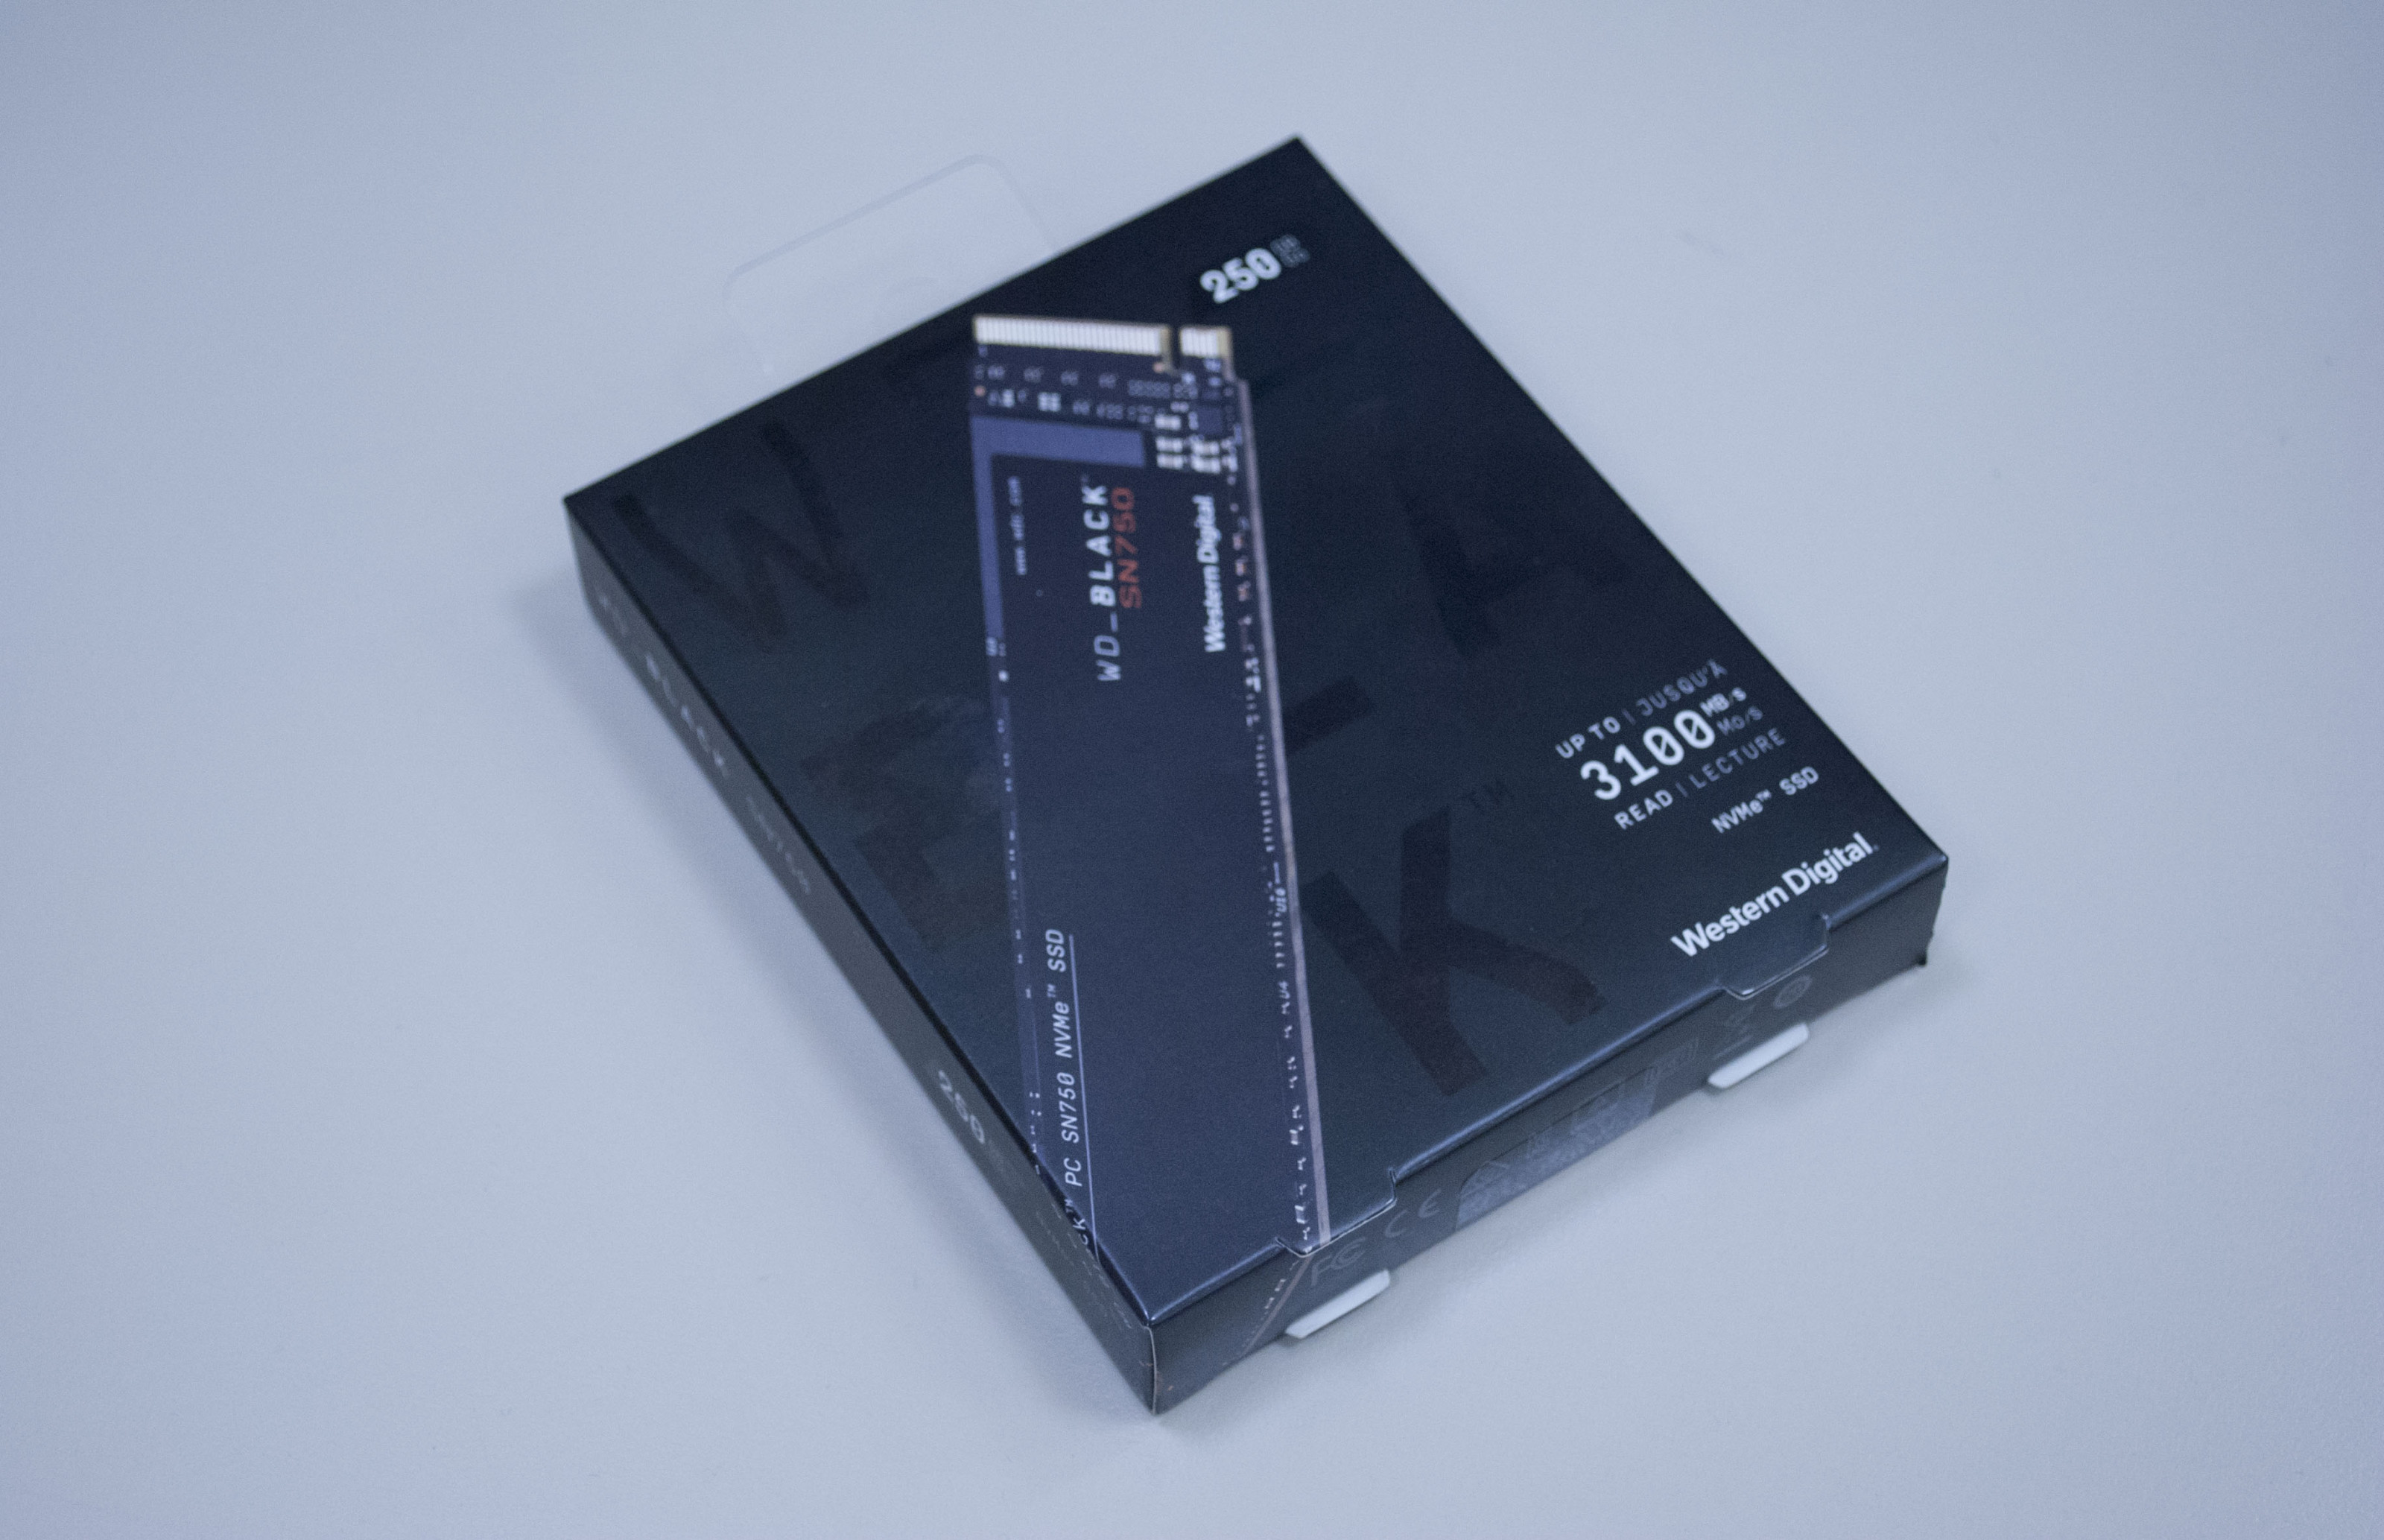 Лучшее - враг хорошего. Обзор NVMe SSD-накопителя WD Black SN750 Black, SN750, скорость, время, накопитель, может, позволяет, решила, комплекте, возможно, SanDisk, записи, флагманской, энергосбережения, памяти, линейки, обновить, устойчивая, посмотреть, заметно